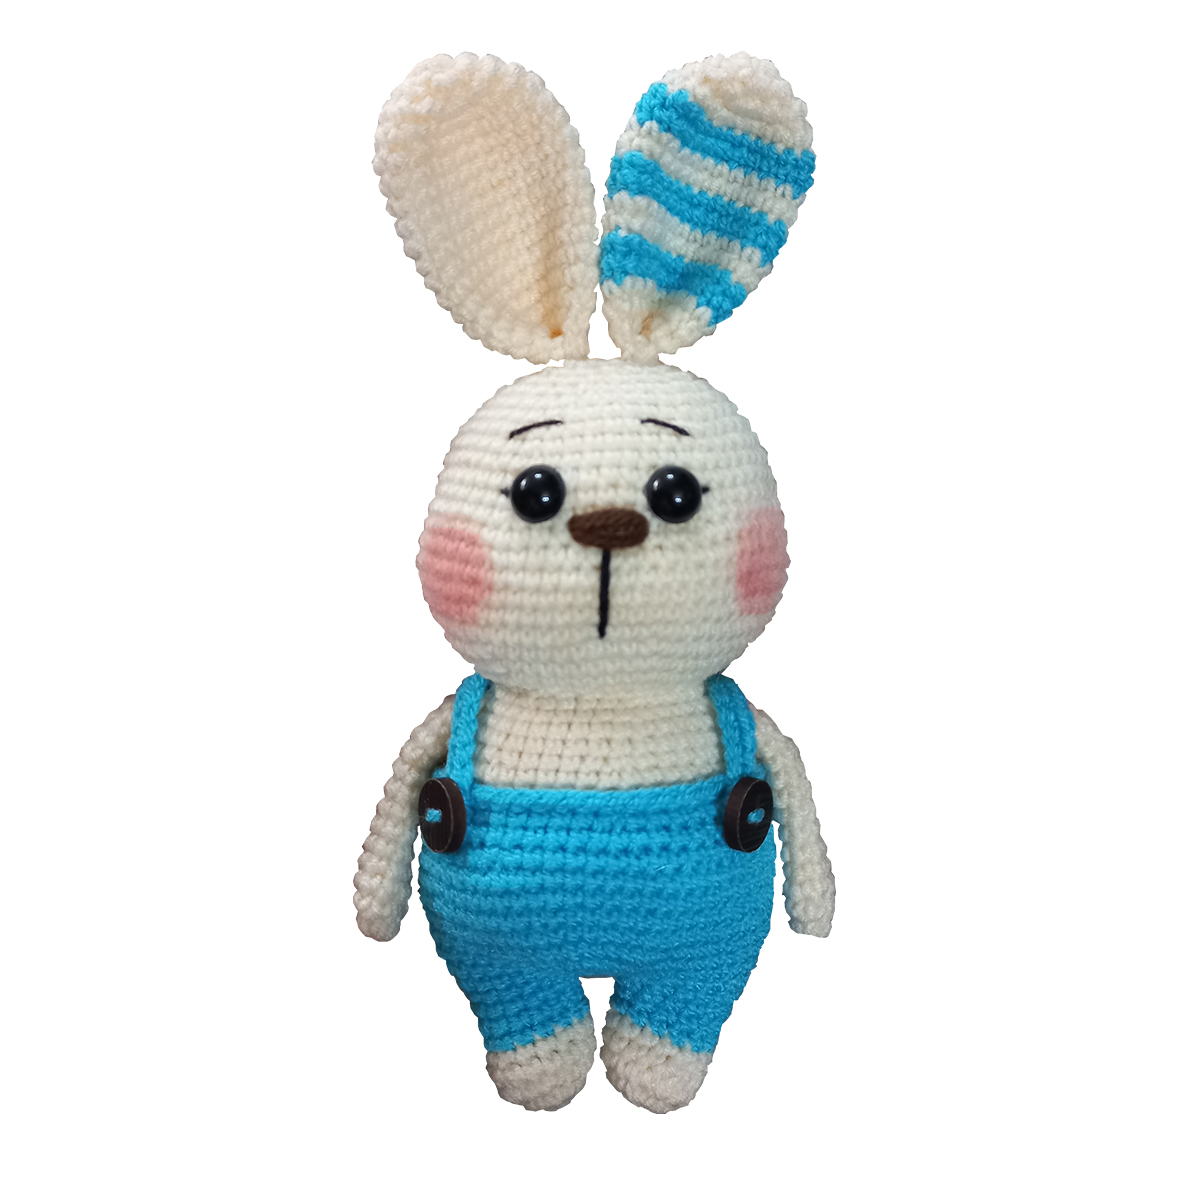 نقد و بررسی عروسک بافتنی طرح خرگوش مدل استریپ کد 22 توسط خریداران